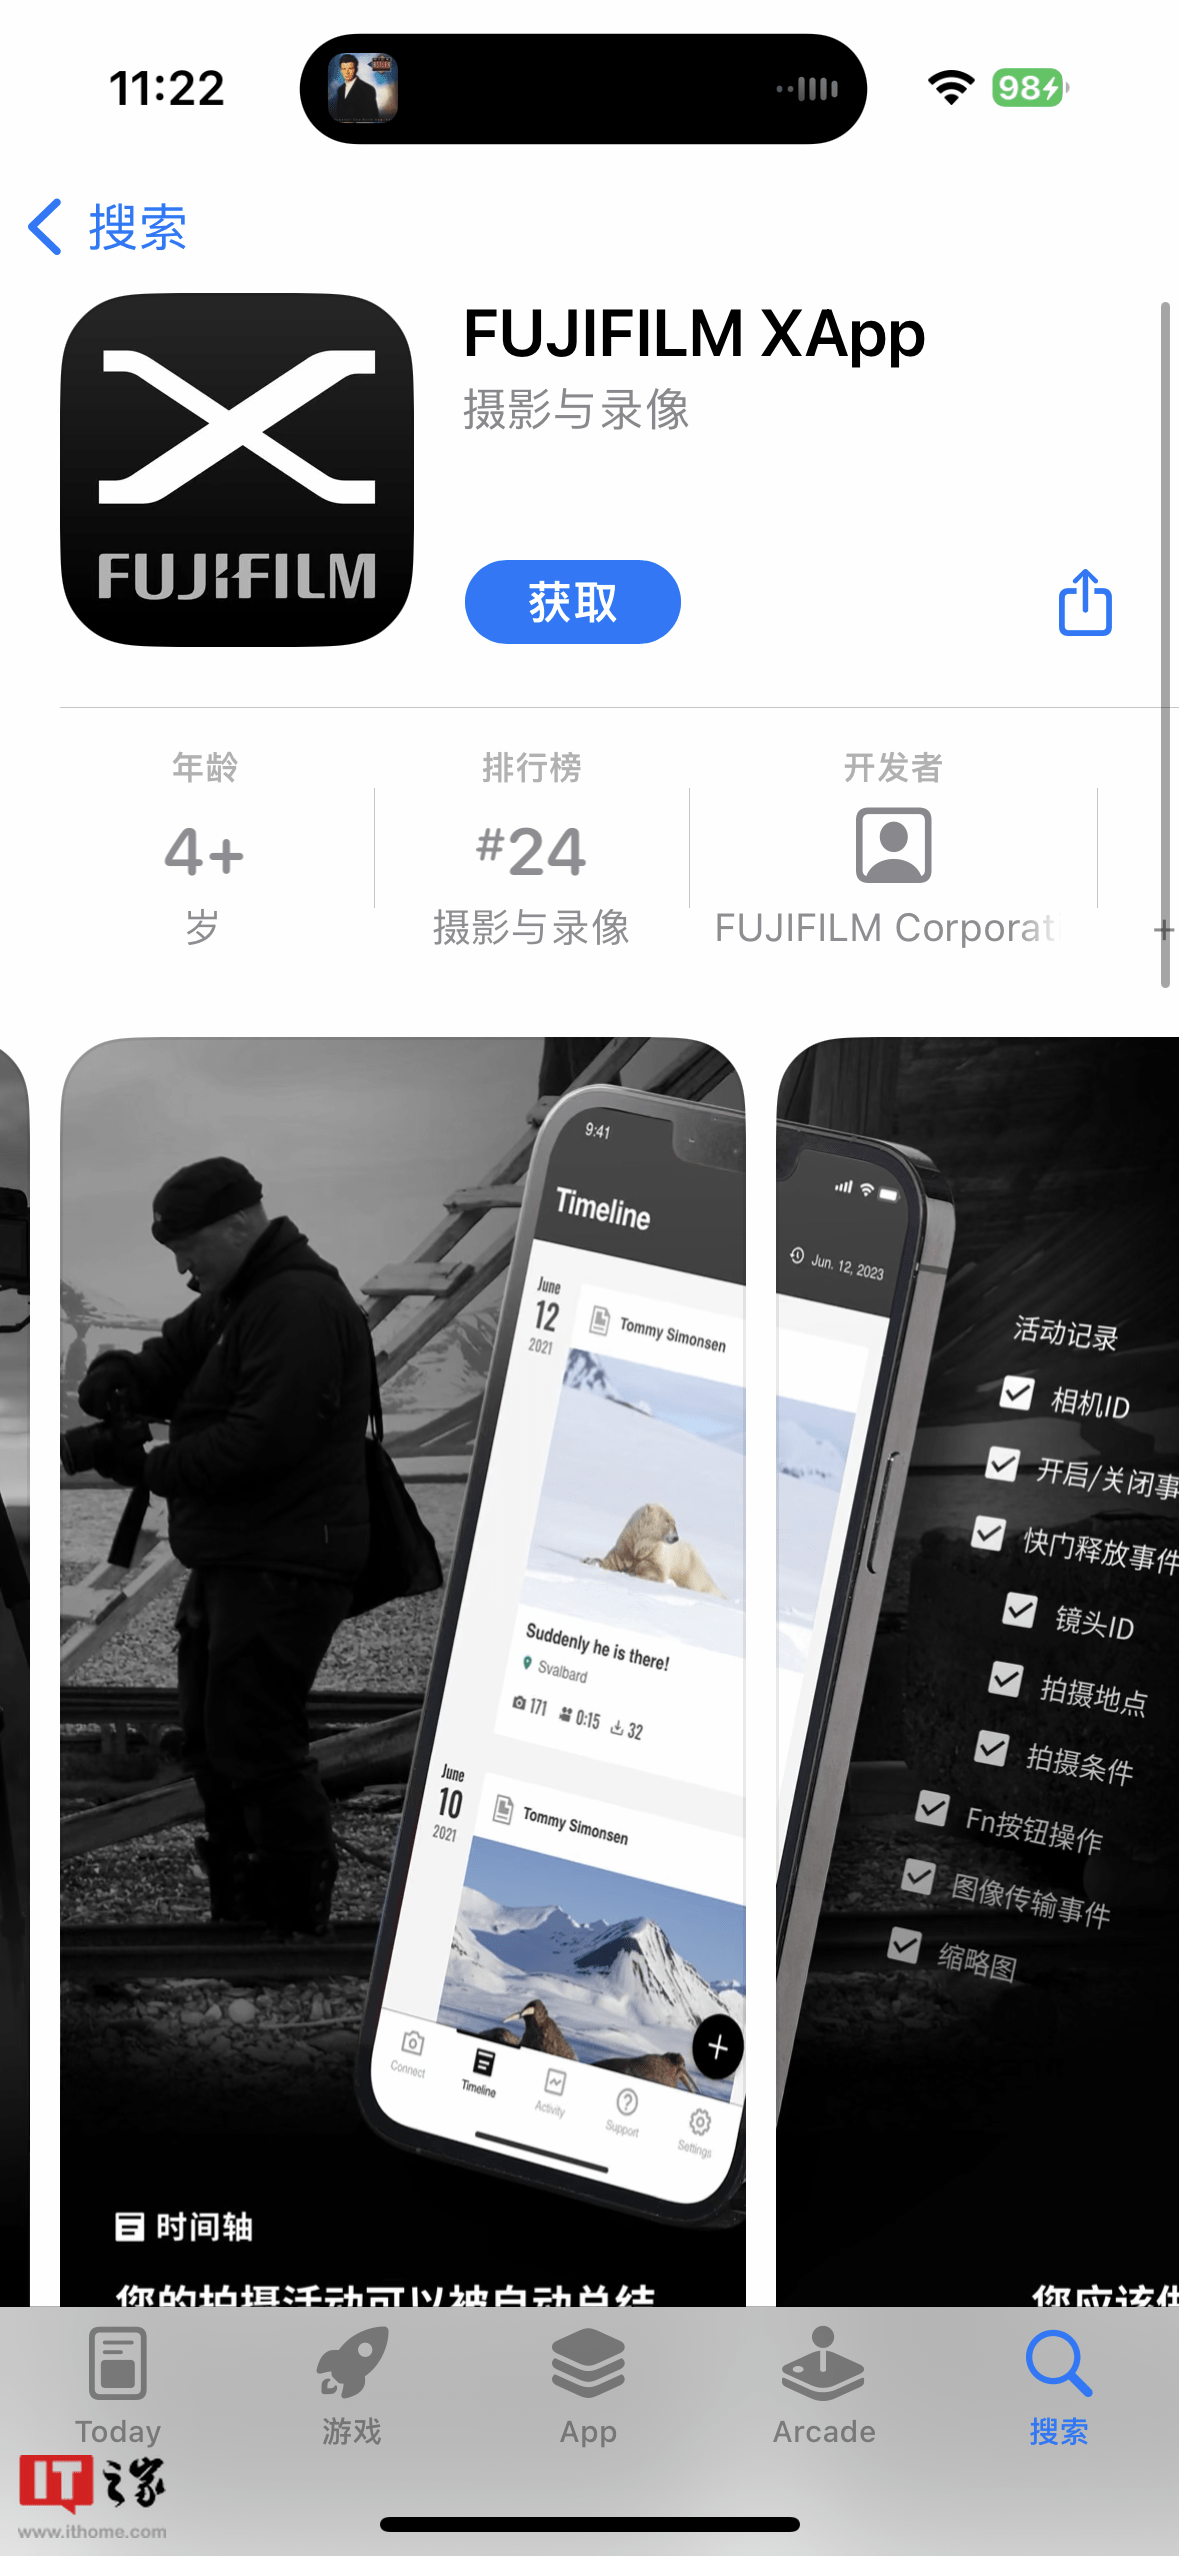 富士发布全新远程相机控制应用FUJIFILM XApp 可实时视图模式下查看图像